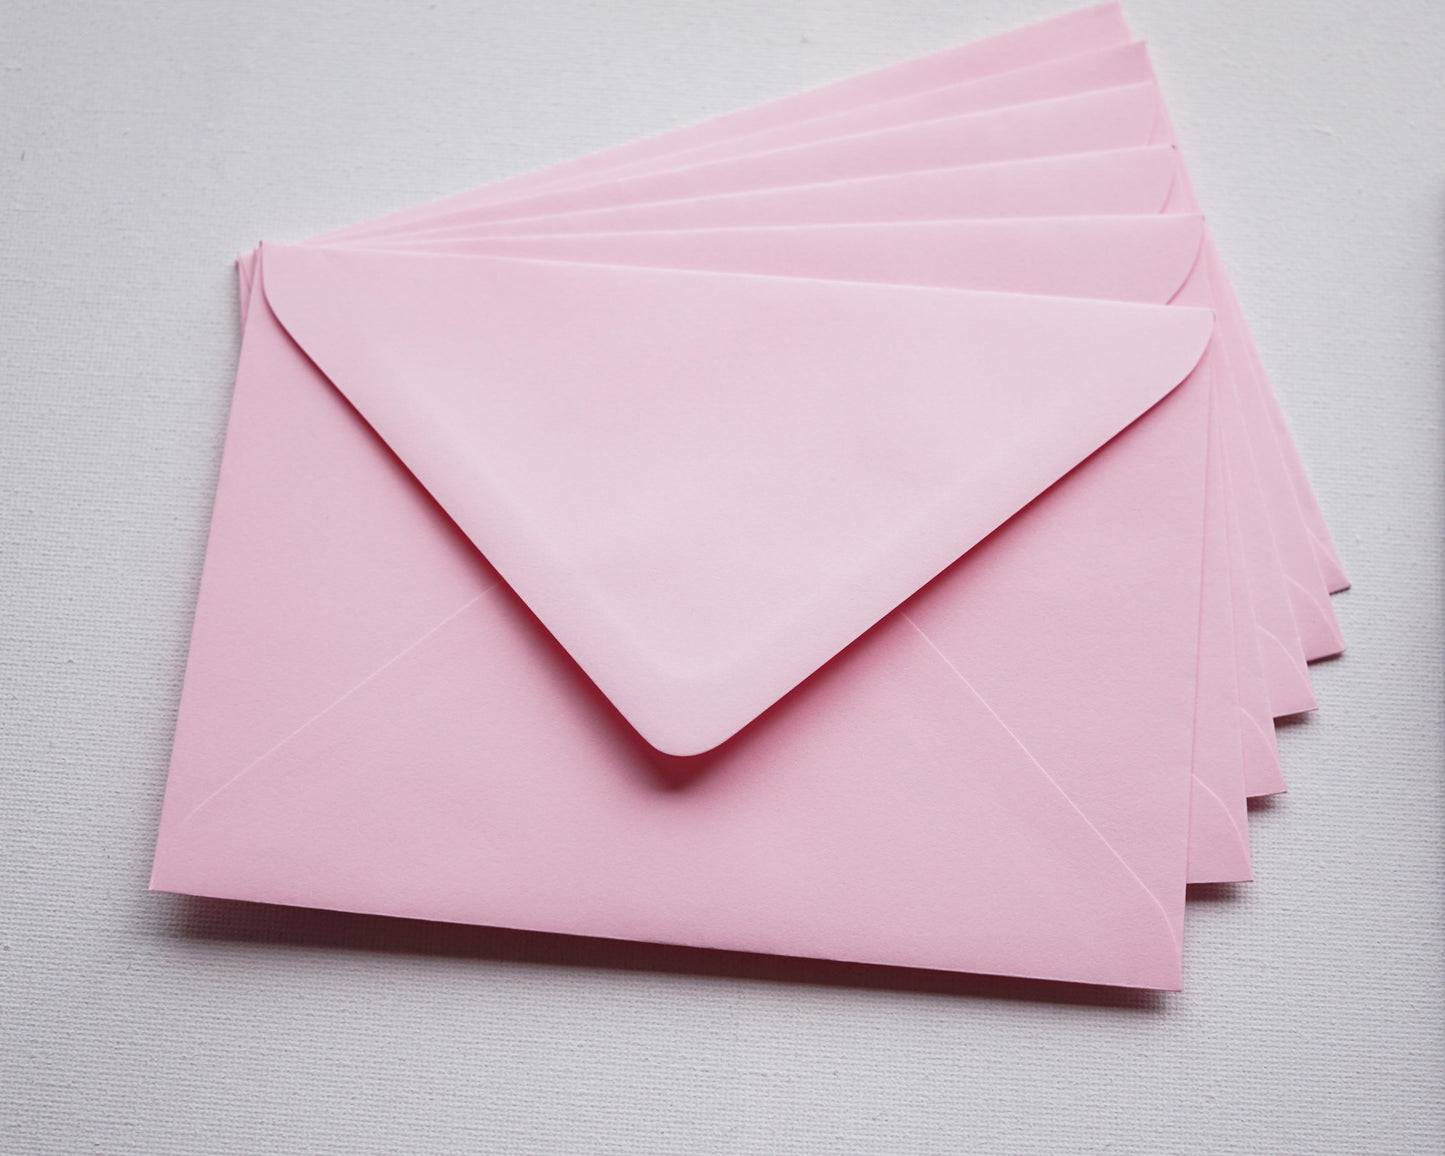 Pasztell rózsaszín díszboríték i8 - 13,3 x 18,4 cm.-Boríték-i8 - 13.3 x 18.4 cm -boríték, rózsaszín boríték - plicuri colorate - plicuri speciale -Erdélyi Esküvői Meghívók